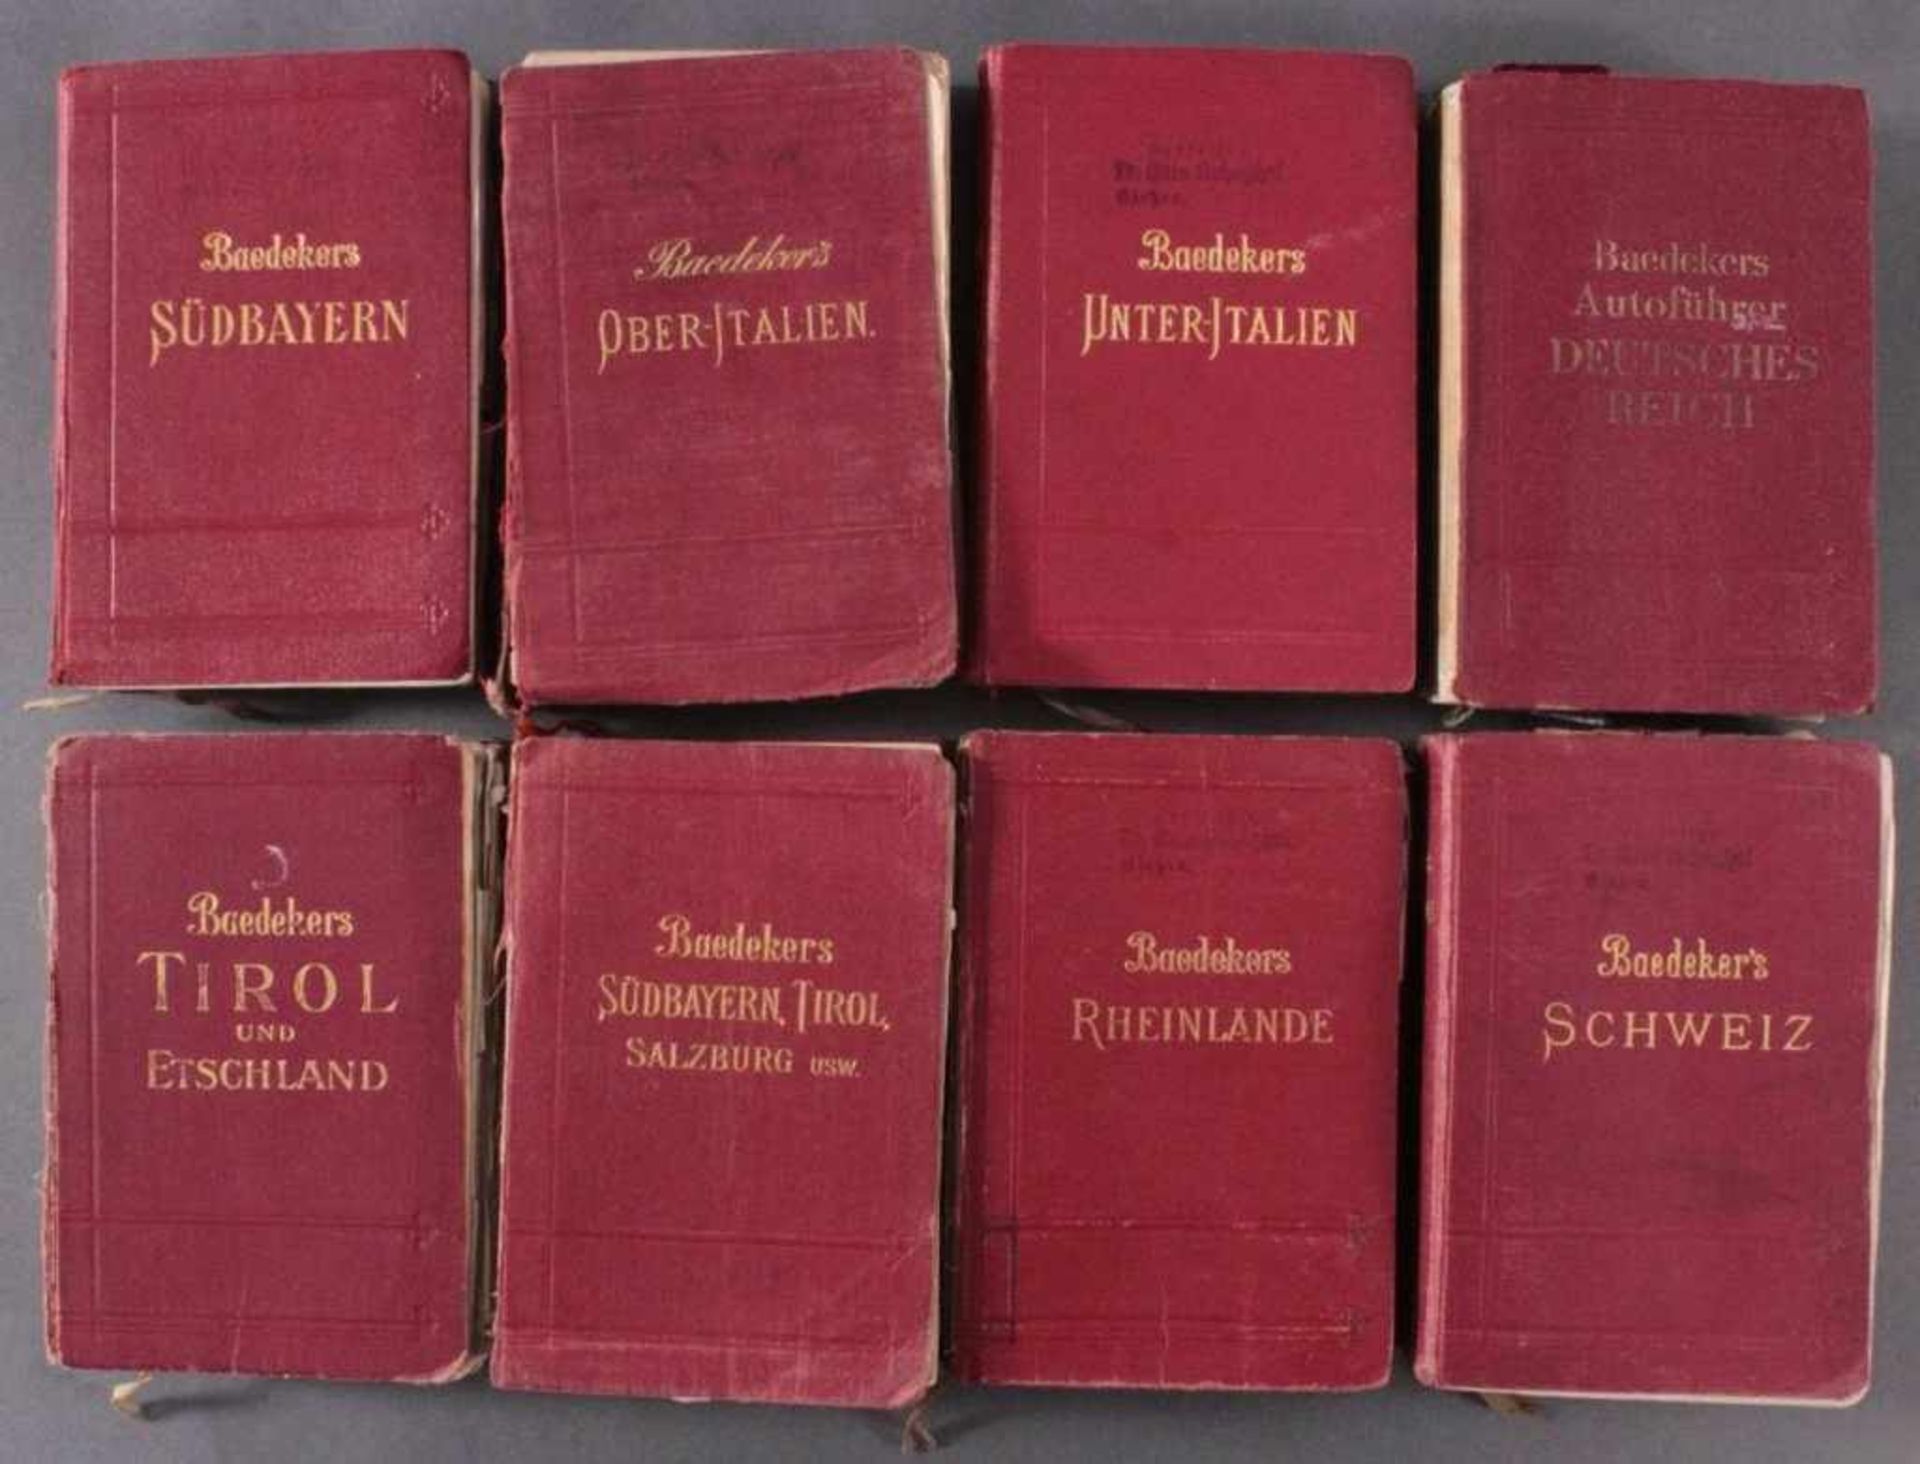 Baeddeckers Reisehandbücher 1828-1945, 8 StückSchweiz, deutsches Reich, Rheinlande, Südbayern